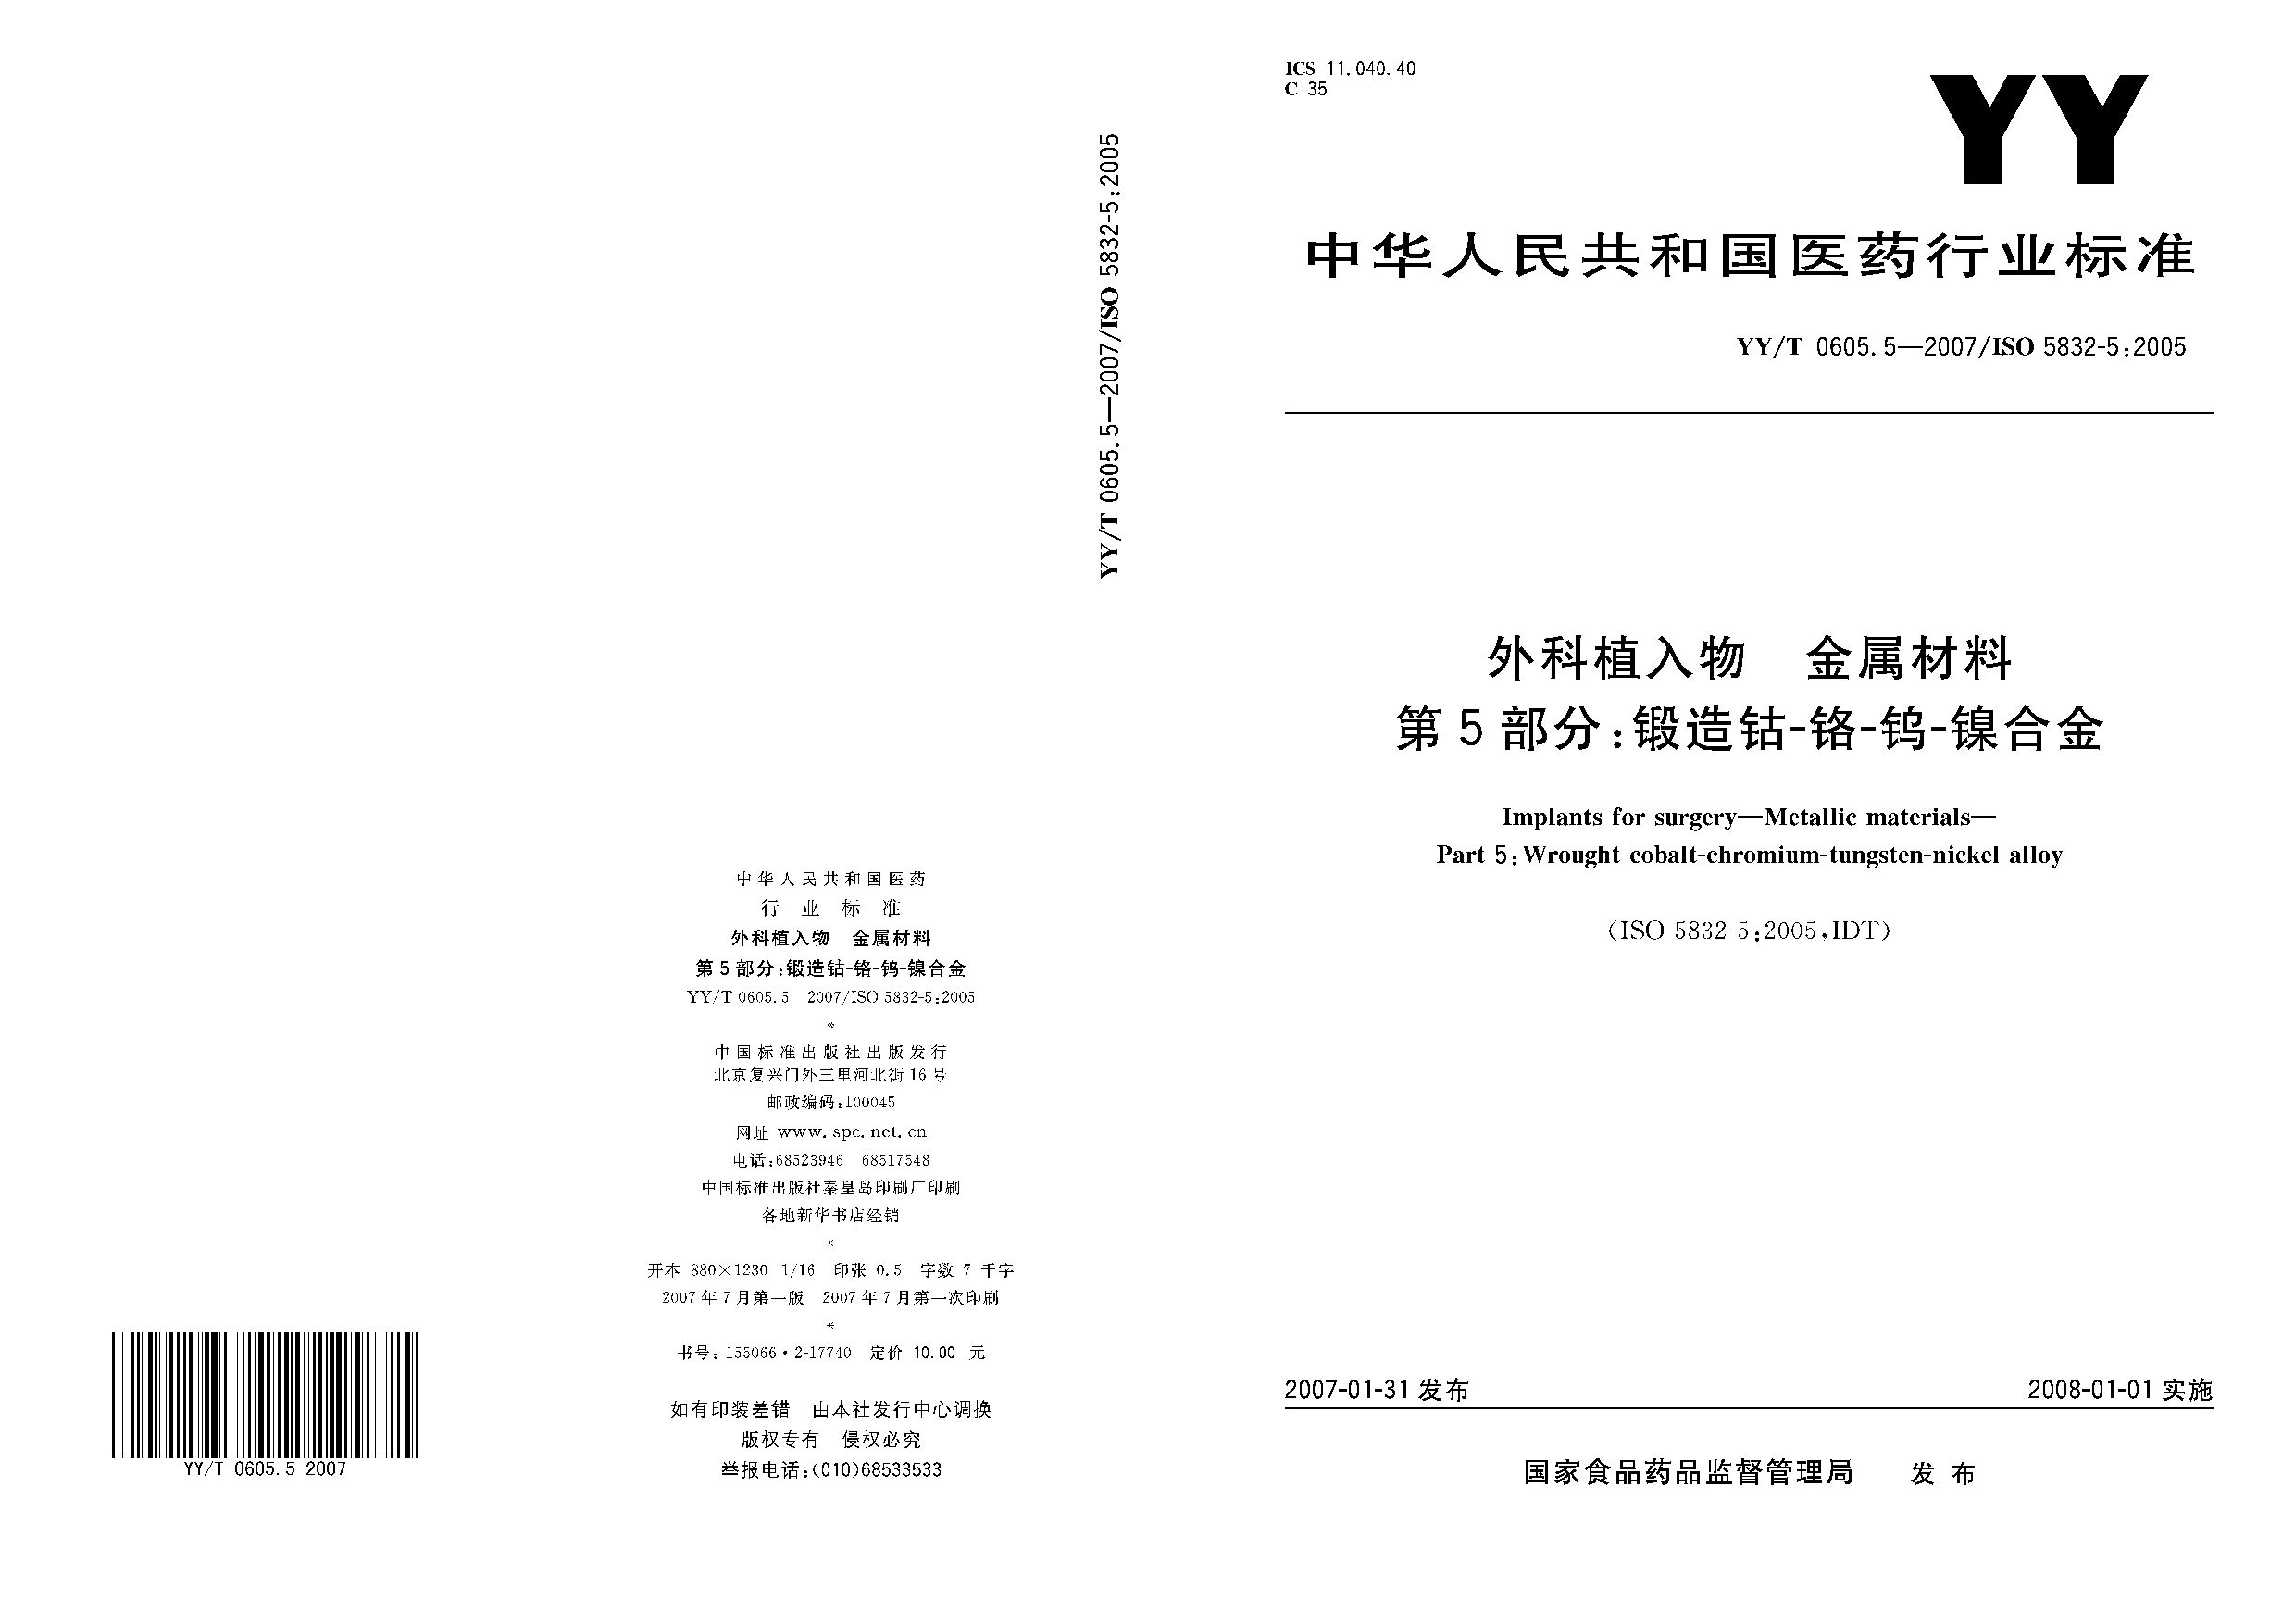 YY/T 0605.5-2007封面图